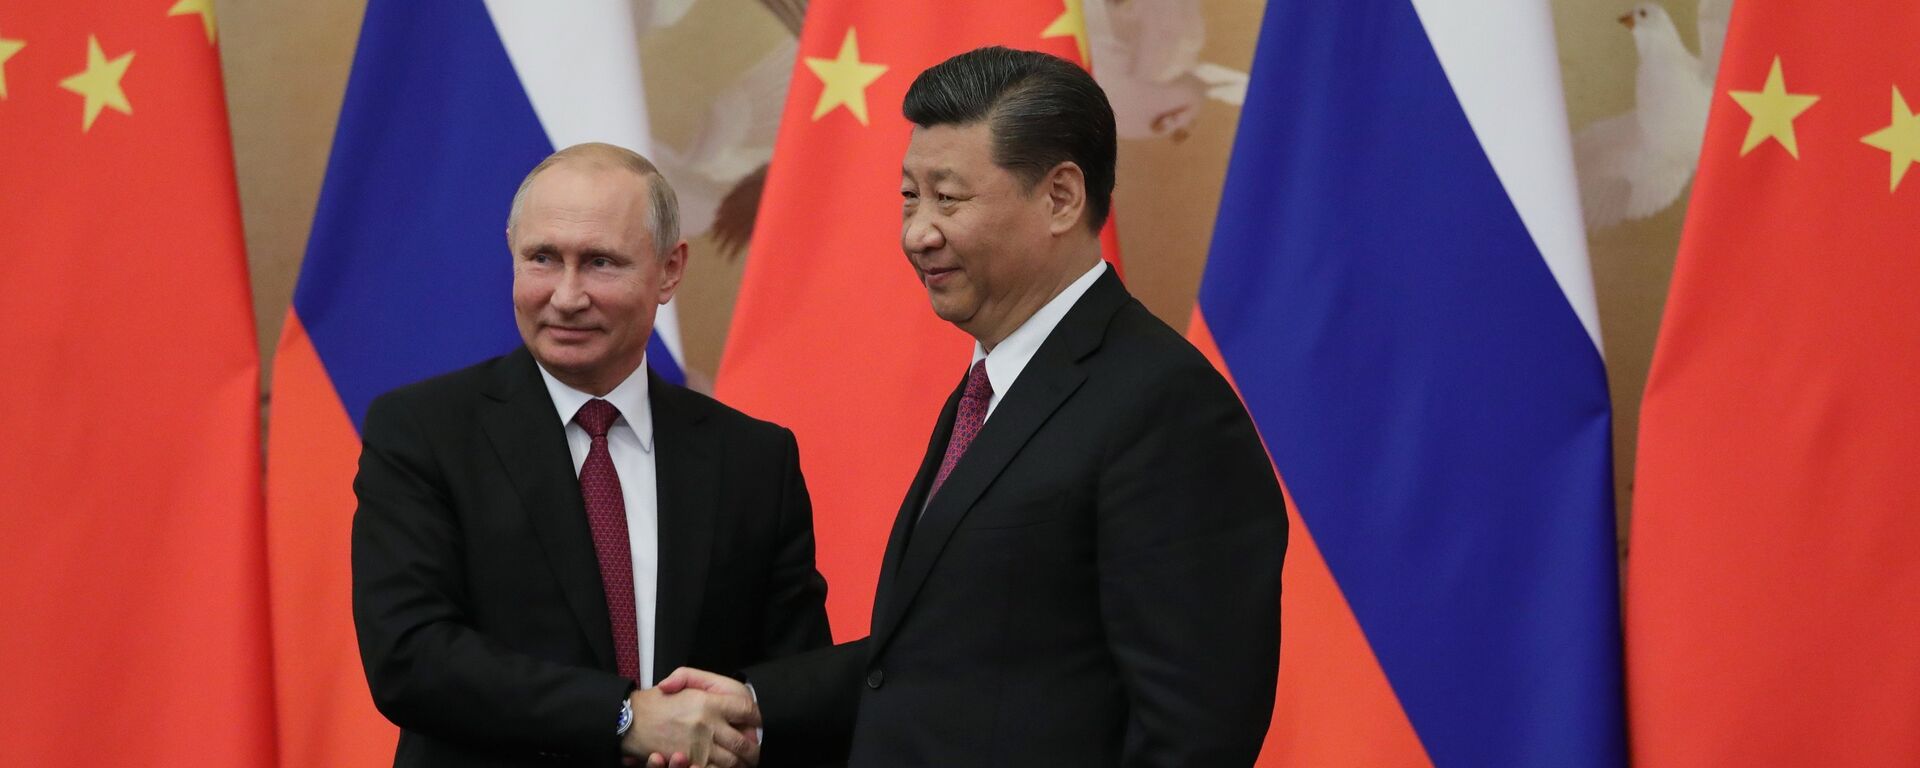 Tổng thống Nga Vladimir Putin và Chủ tịch Trung quốc Tập Cận Bình - Sputnik Việt Nam, 1920, 09.06.2018